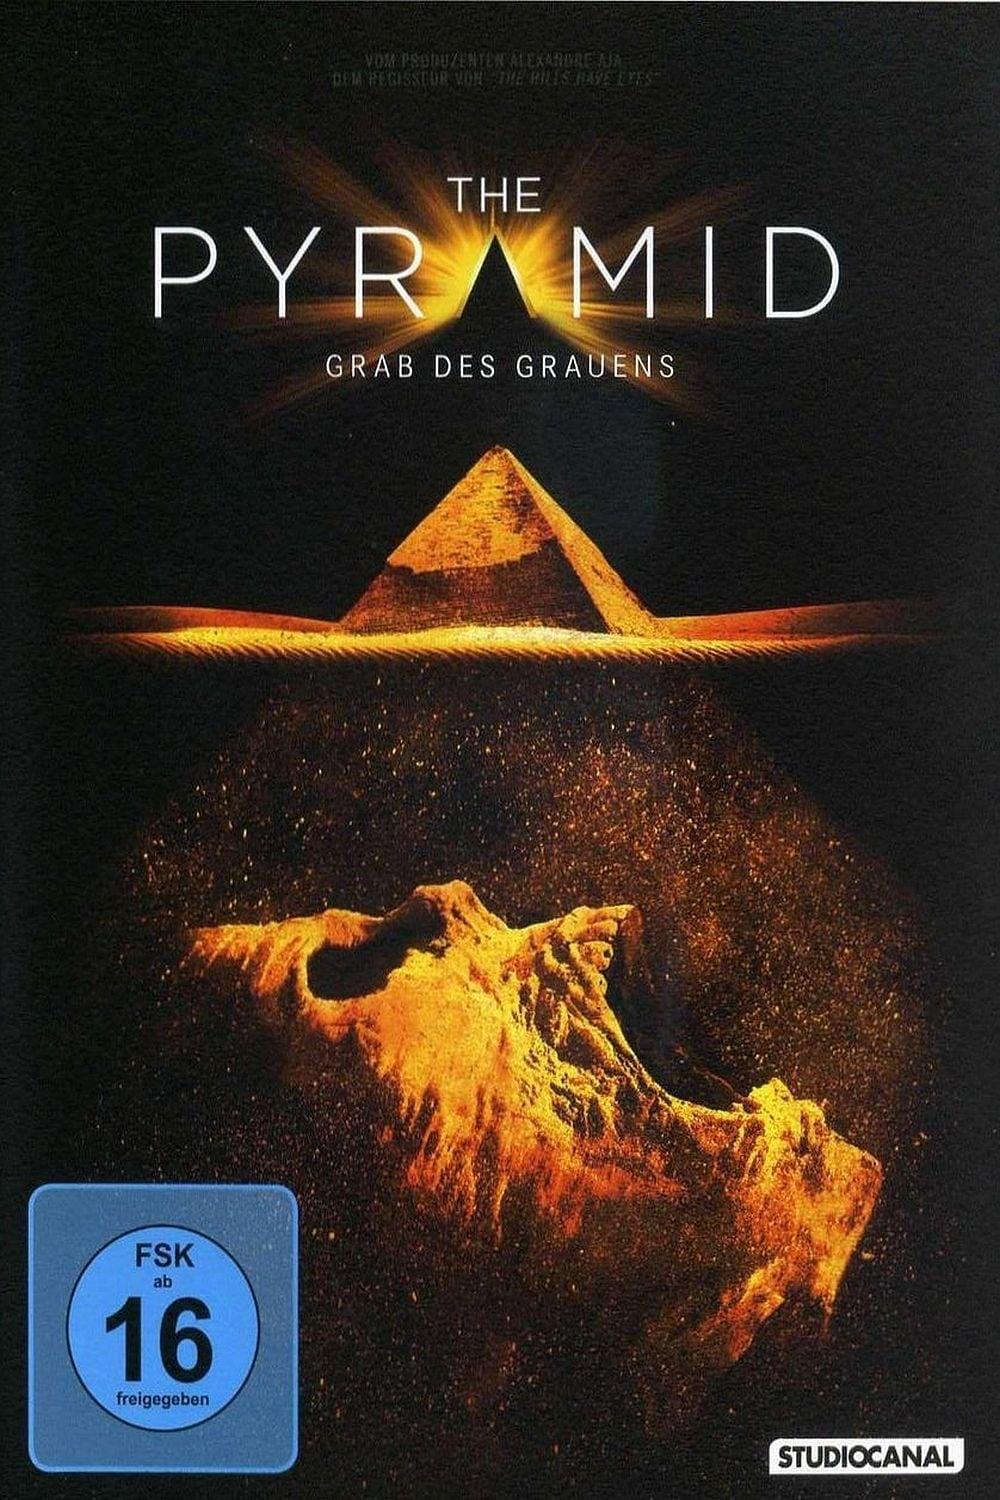 The Pyramid - Grab des Grauens poster